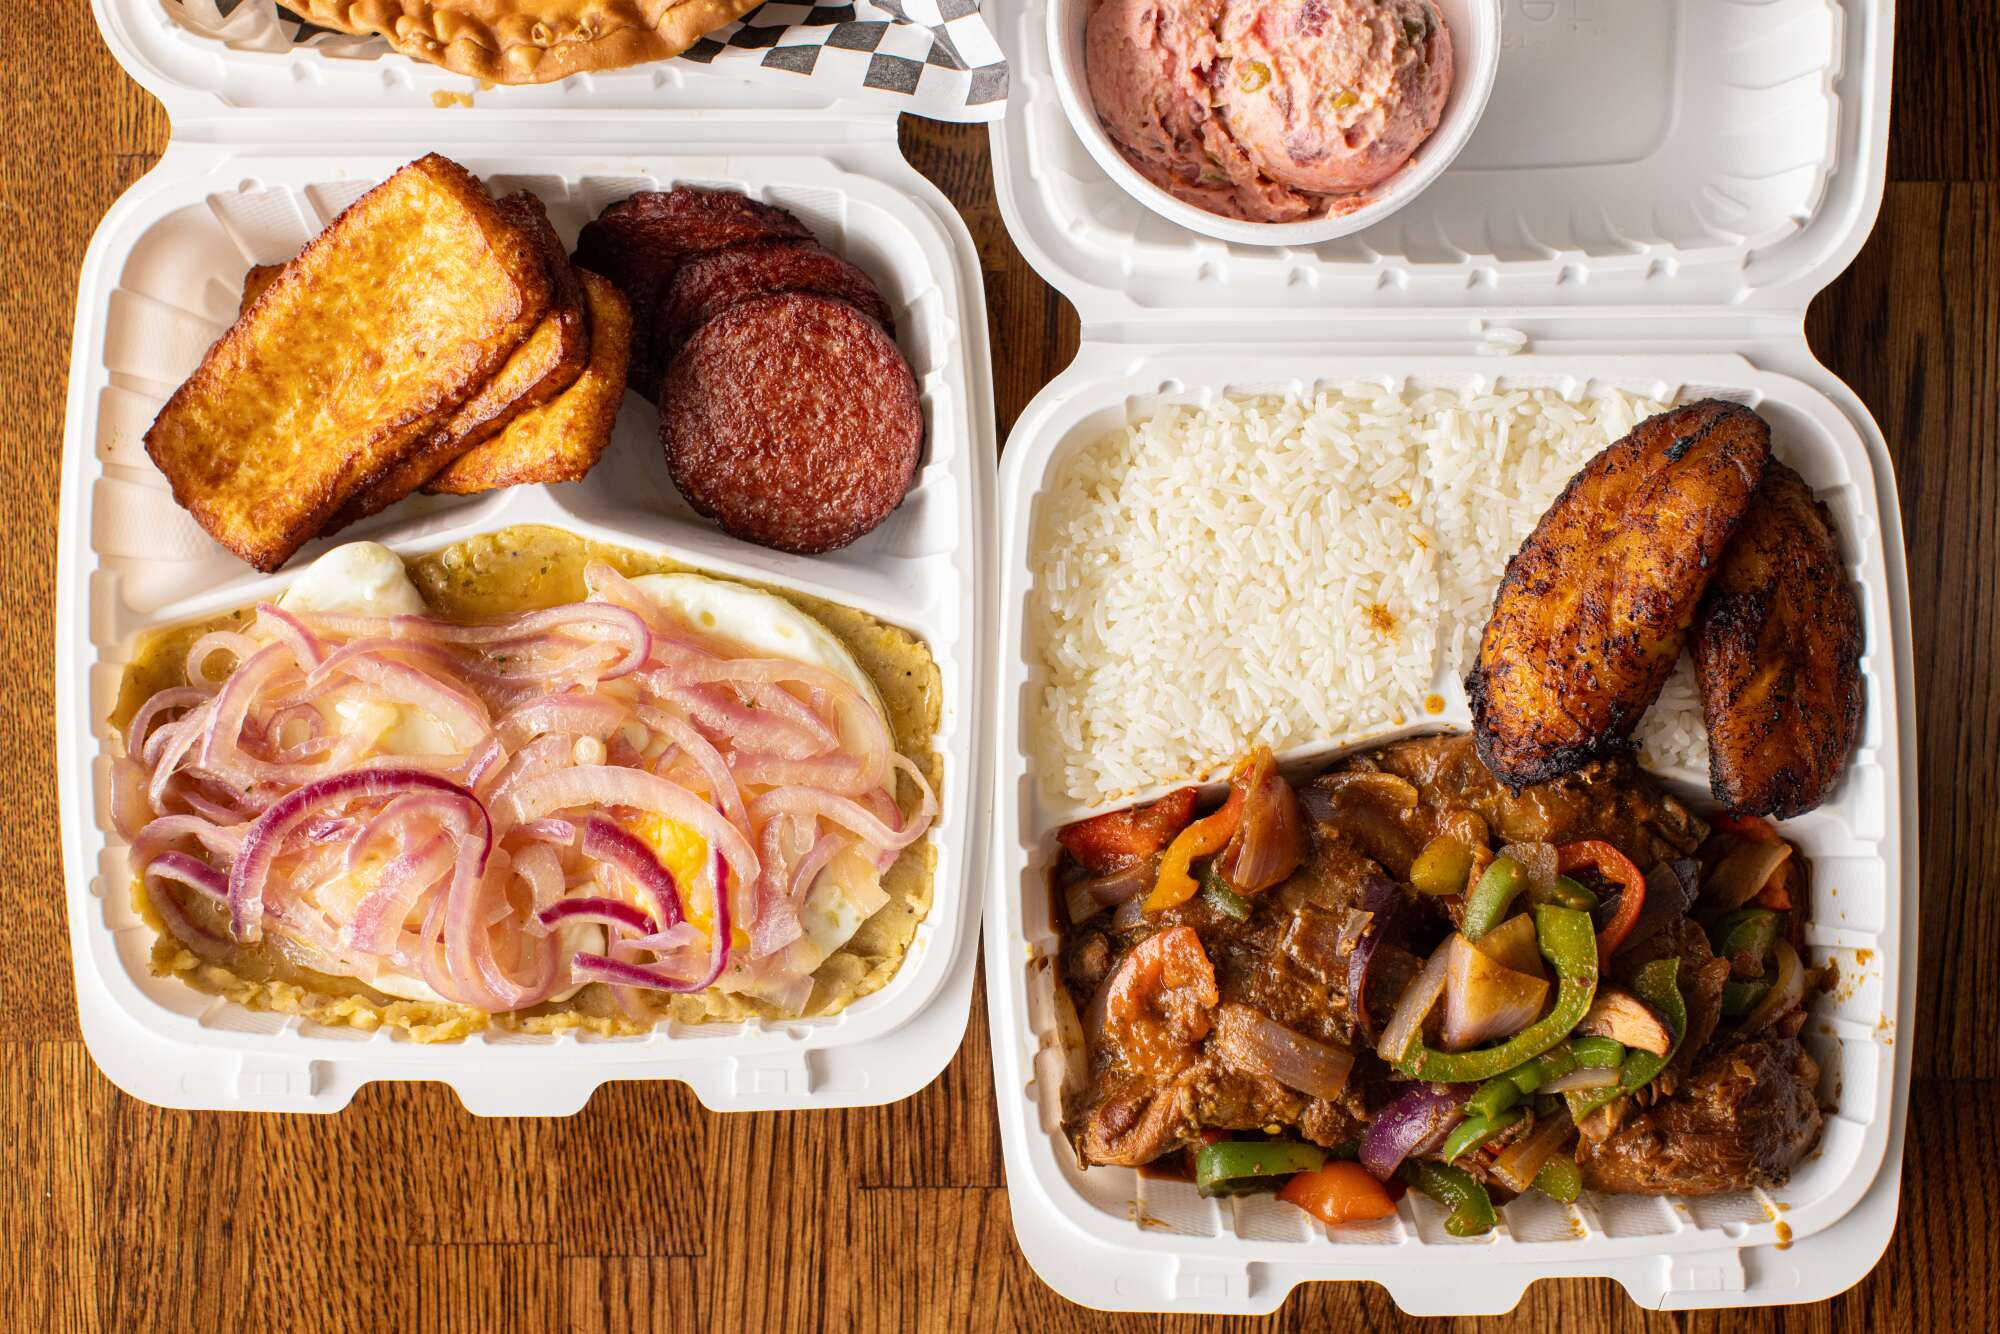 To-go-Boxen mit dominikanischem Frühstück und Hühnchengerichten.